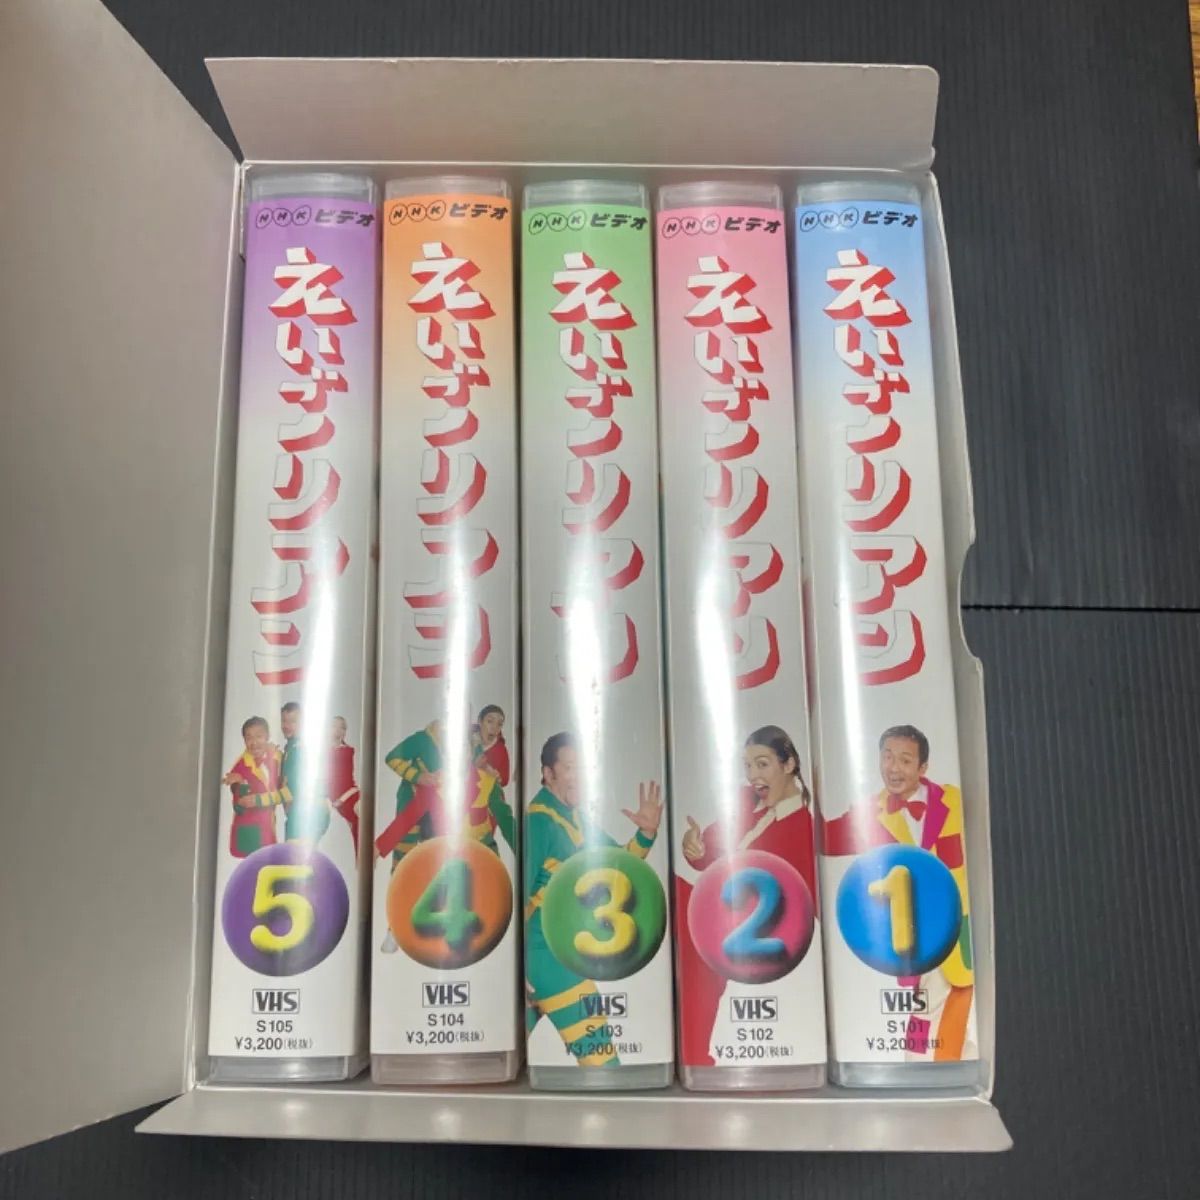 えいごリアン3 5巻セットBOX [DVD](品) | www.ddechuquisaca.gob.bo